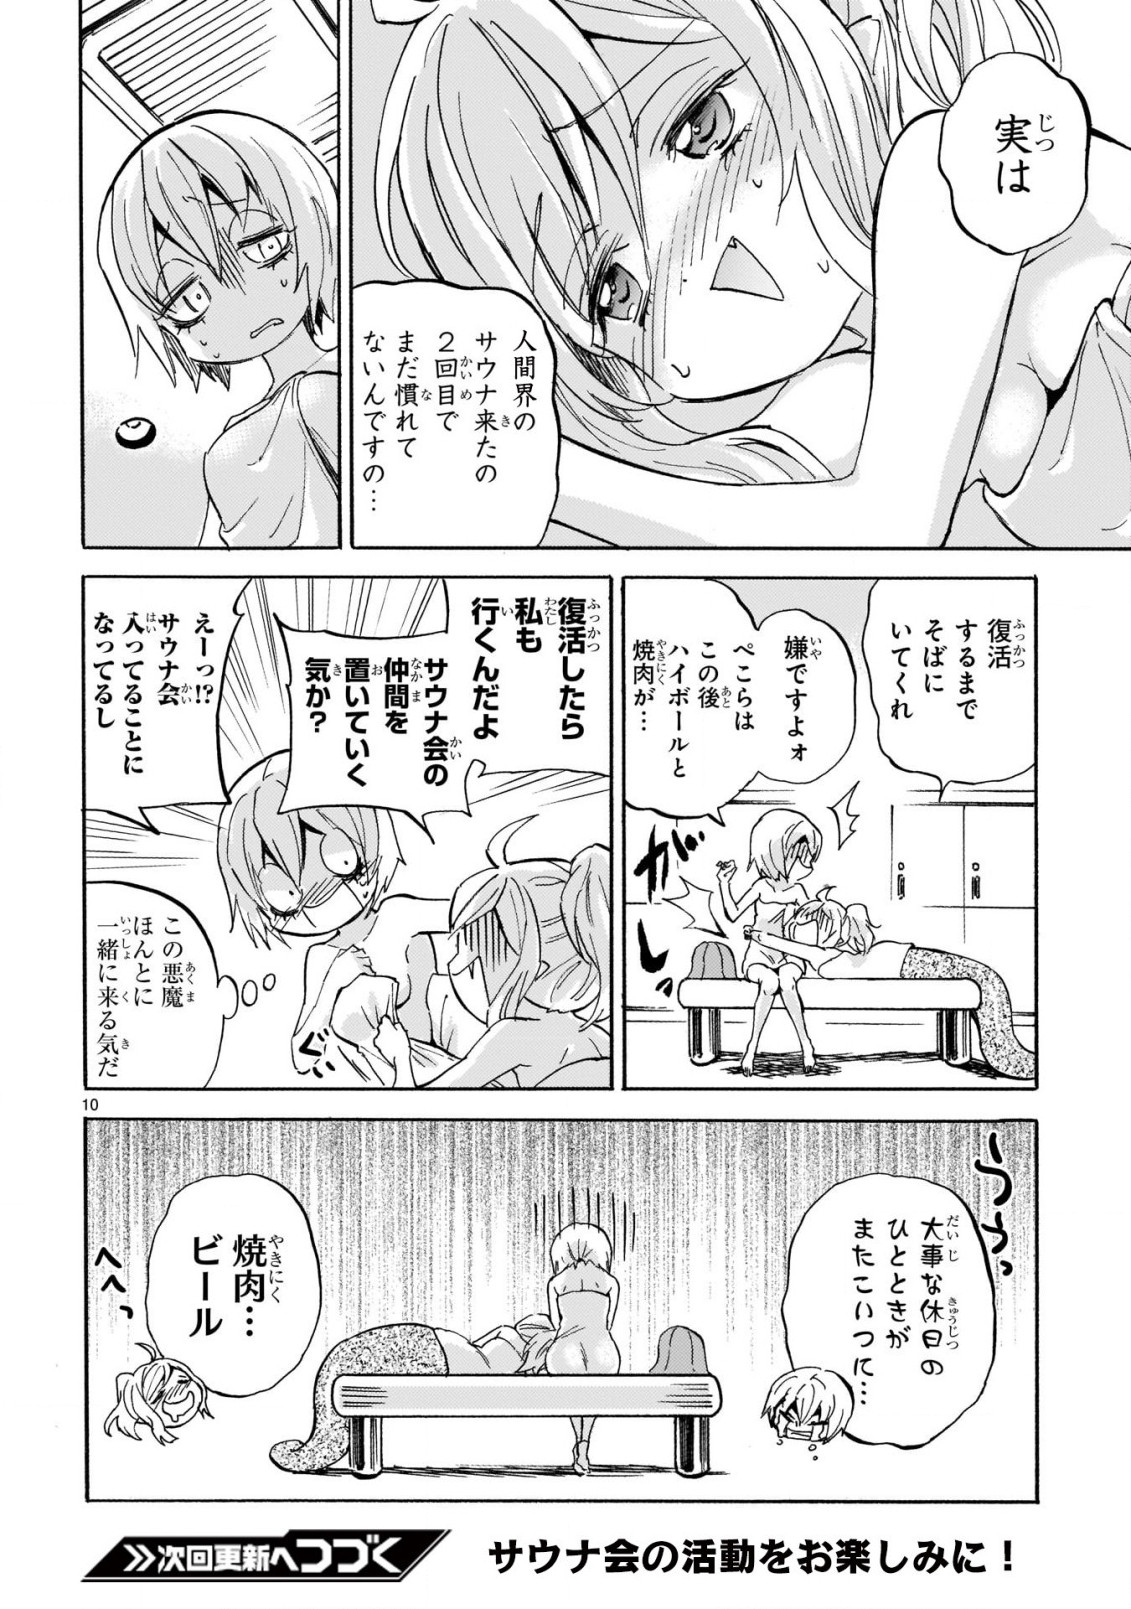 Jashin-chan Dropkick - Chapter 222 - Page 10